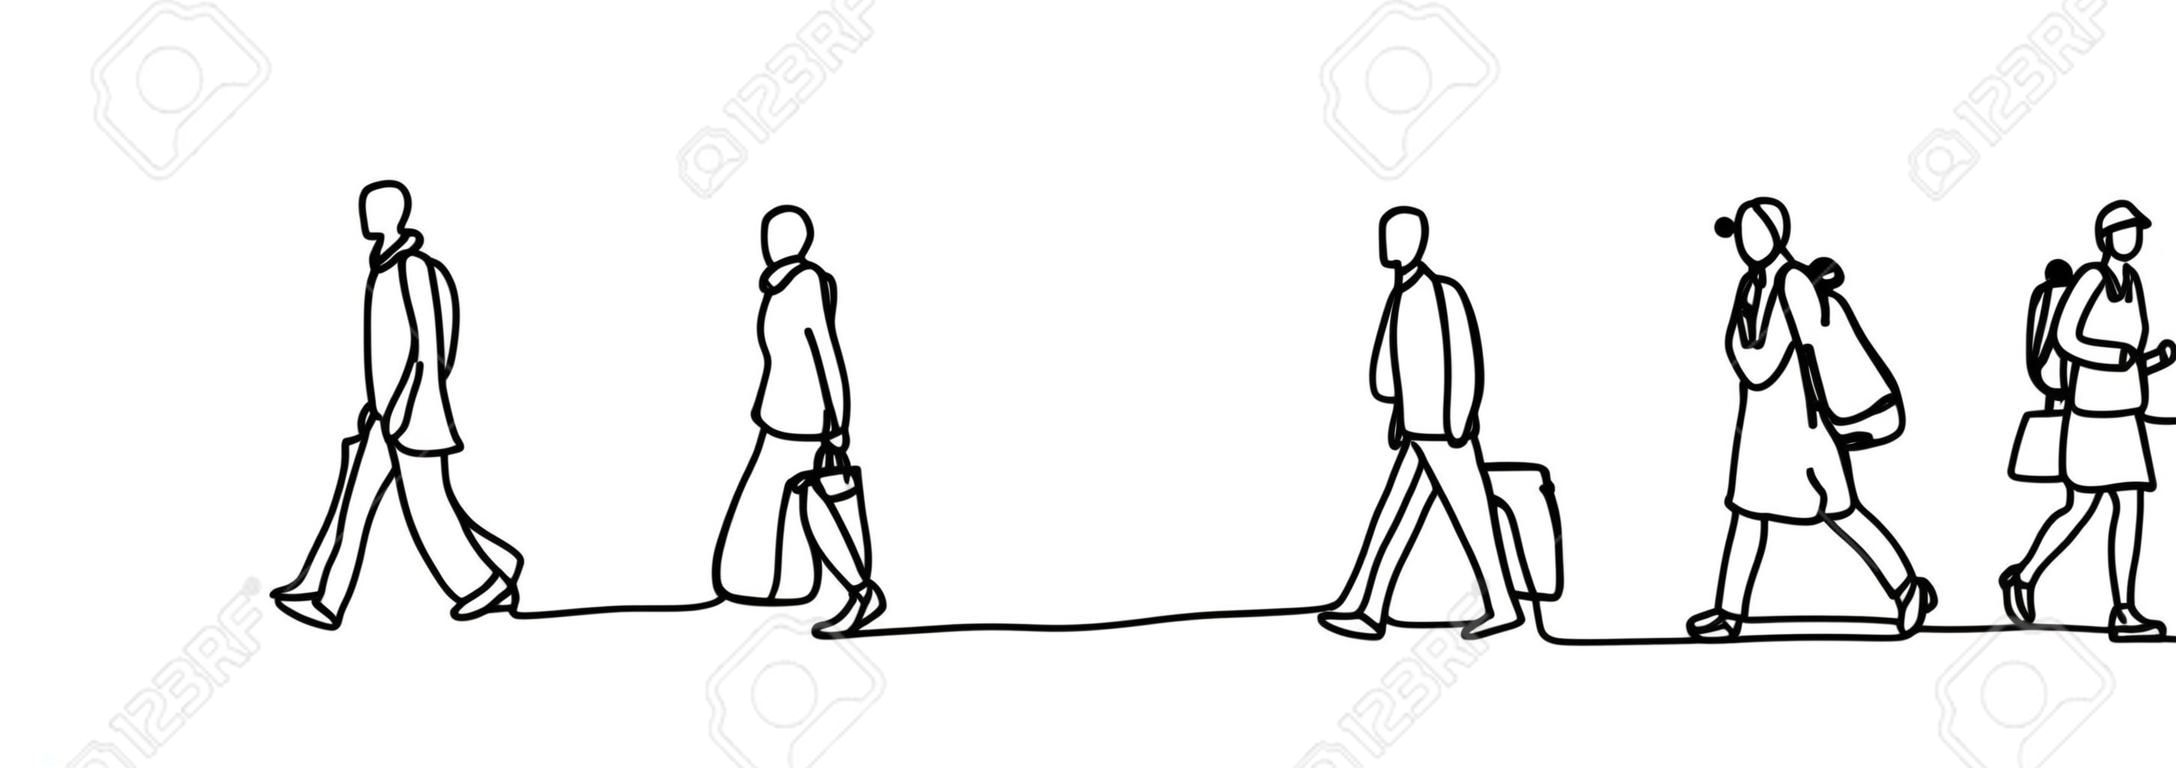 Viajeros urbanos una línea continua dibujo minimalismo diseño boceto dibujado a mano ilustración vectorial. Personas que caminan antes o después del horario laboral.